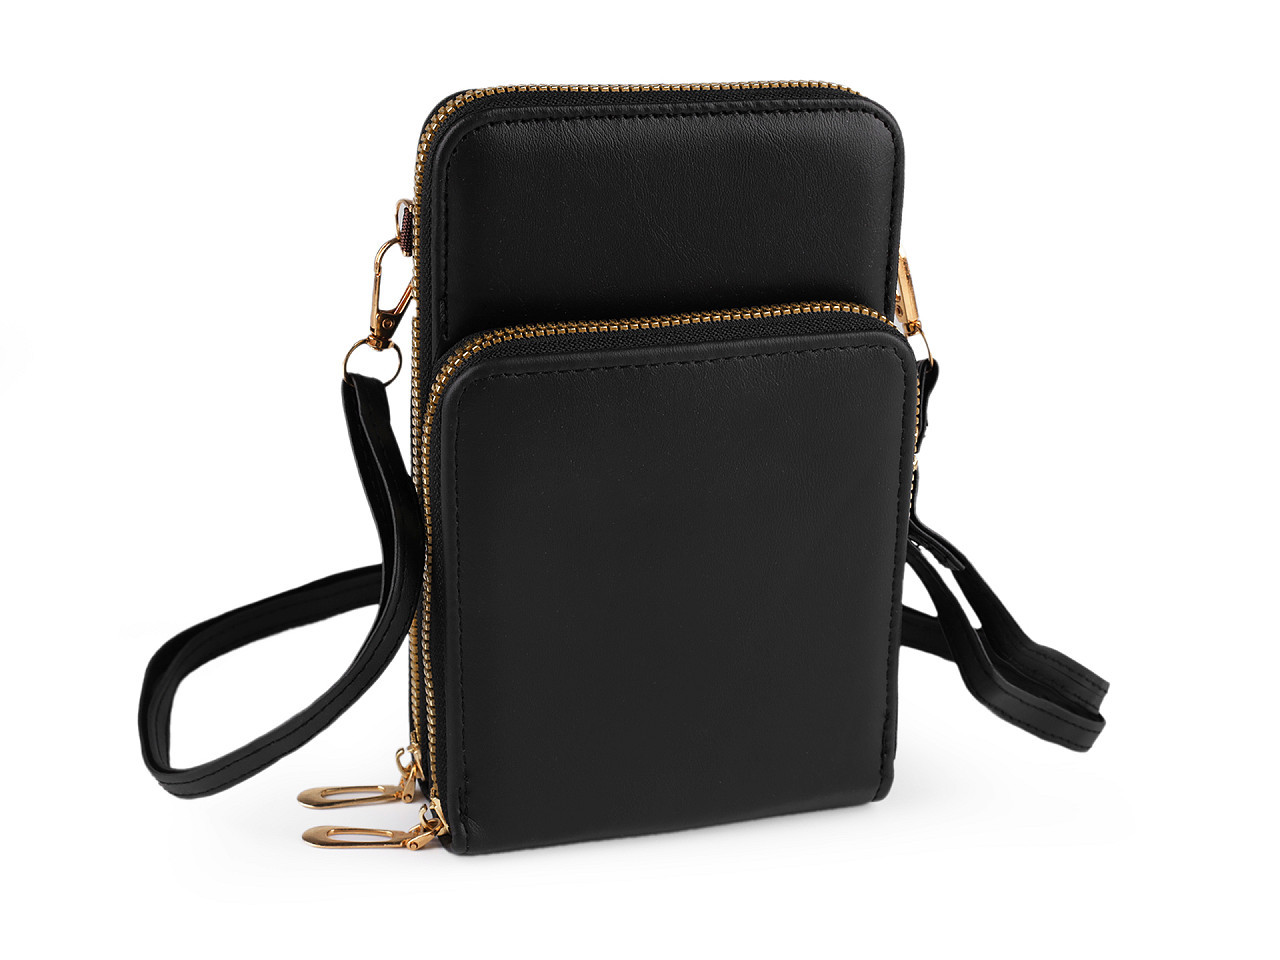 Peněženka s kapsou na mobil přes rameno crossbody 11,5x18cm, barva 5 černá